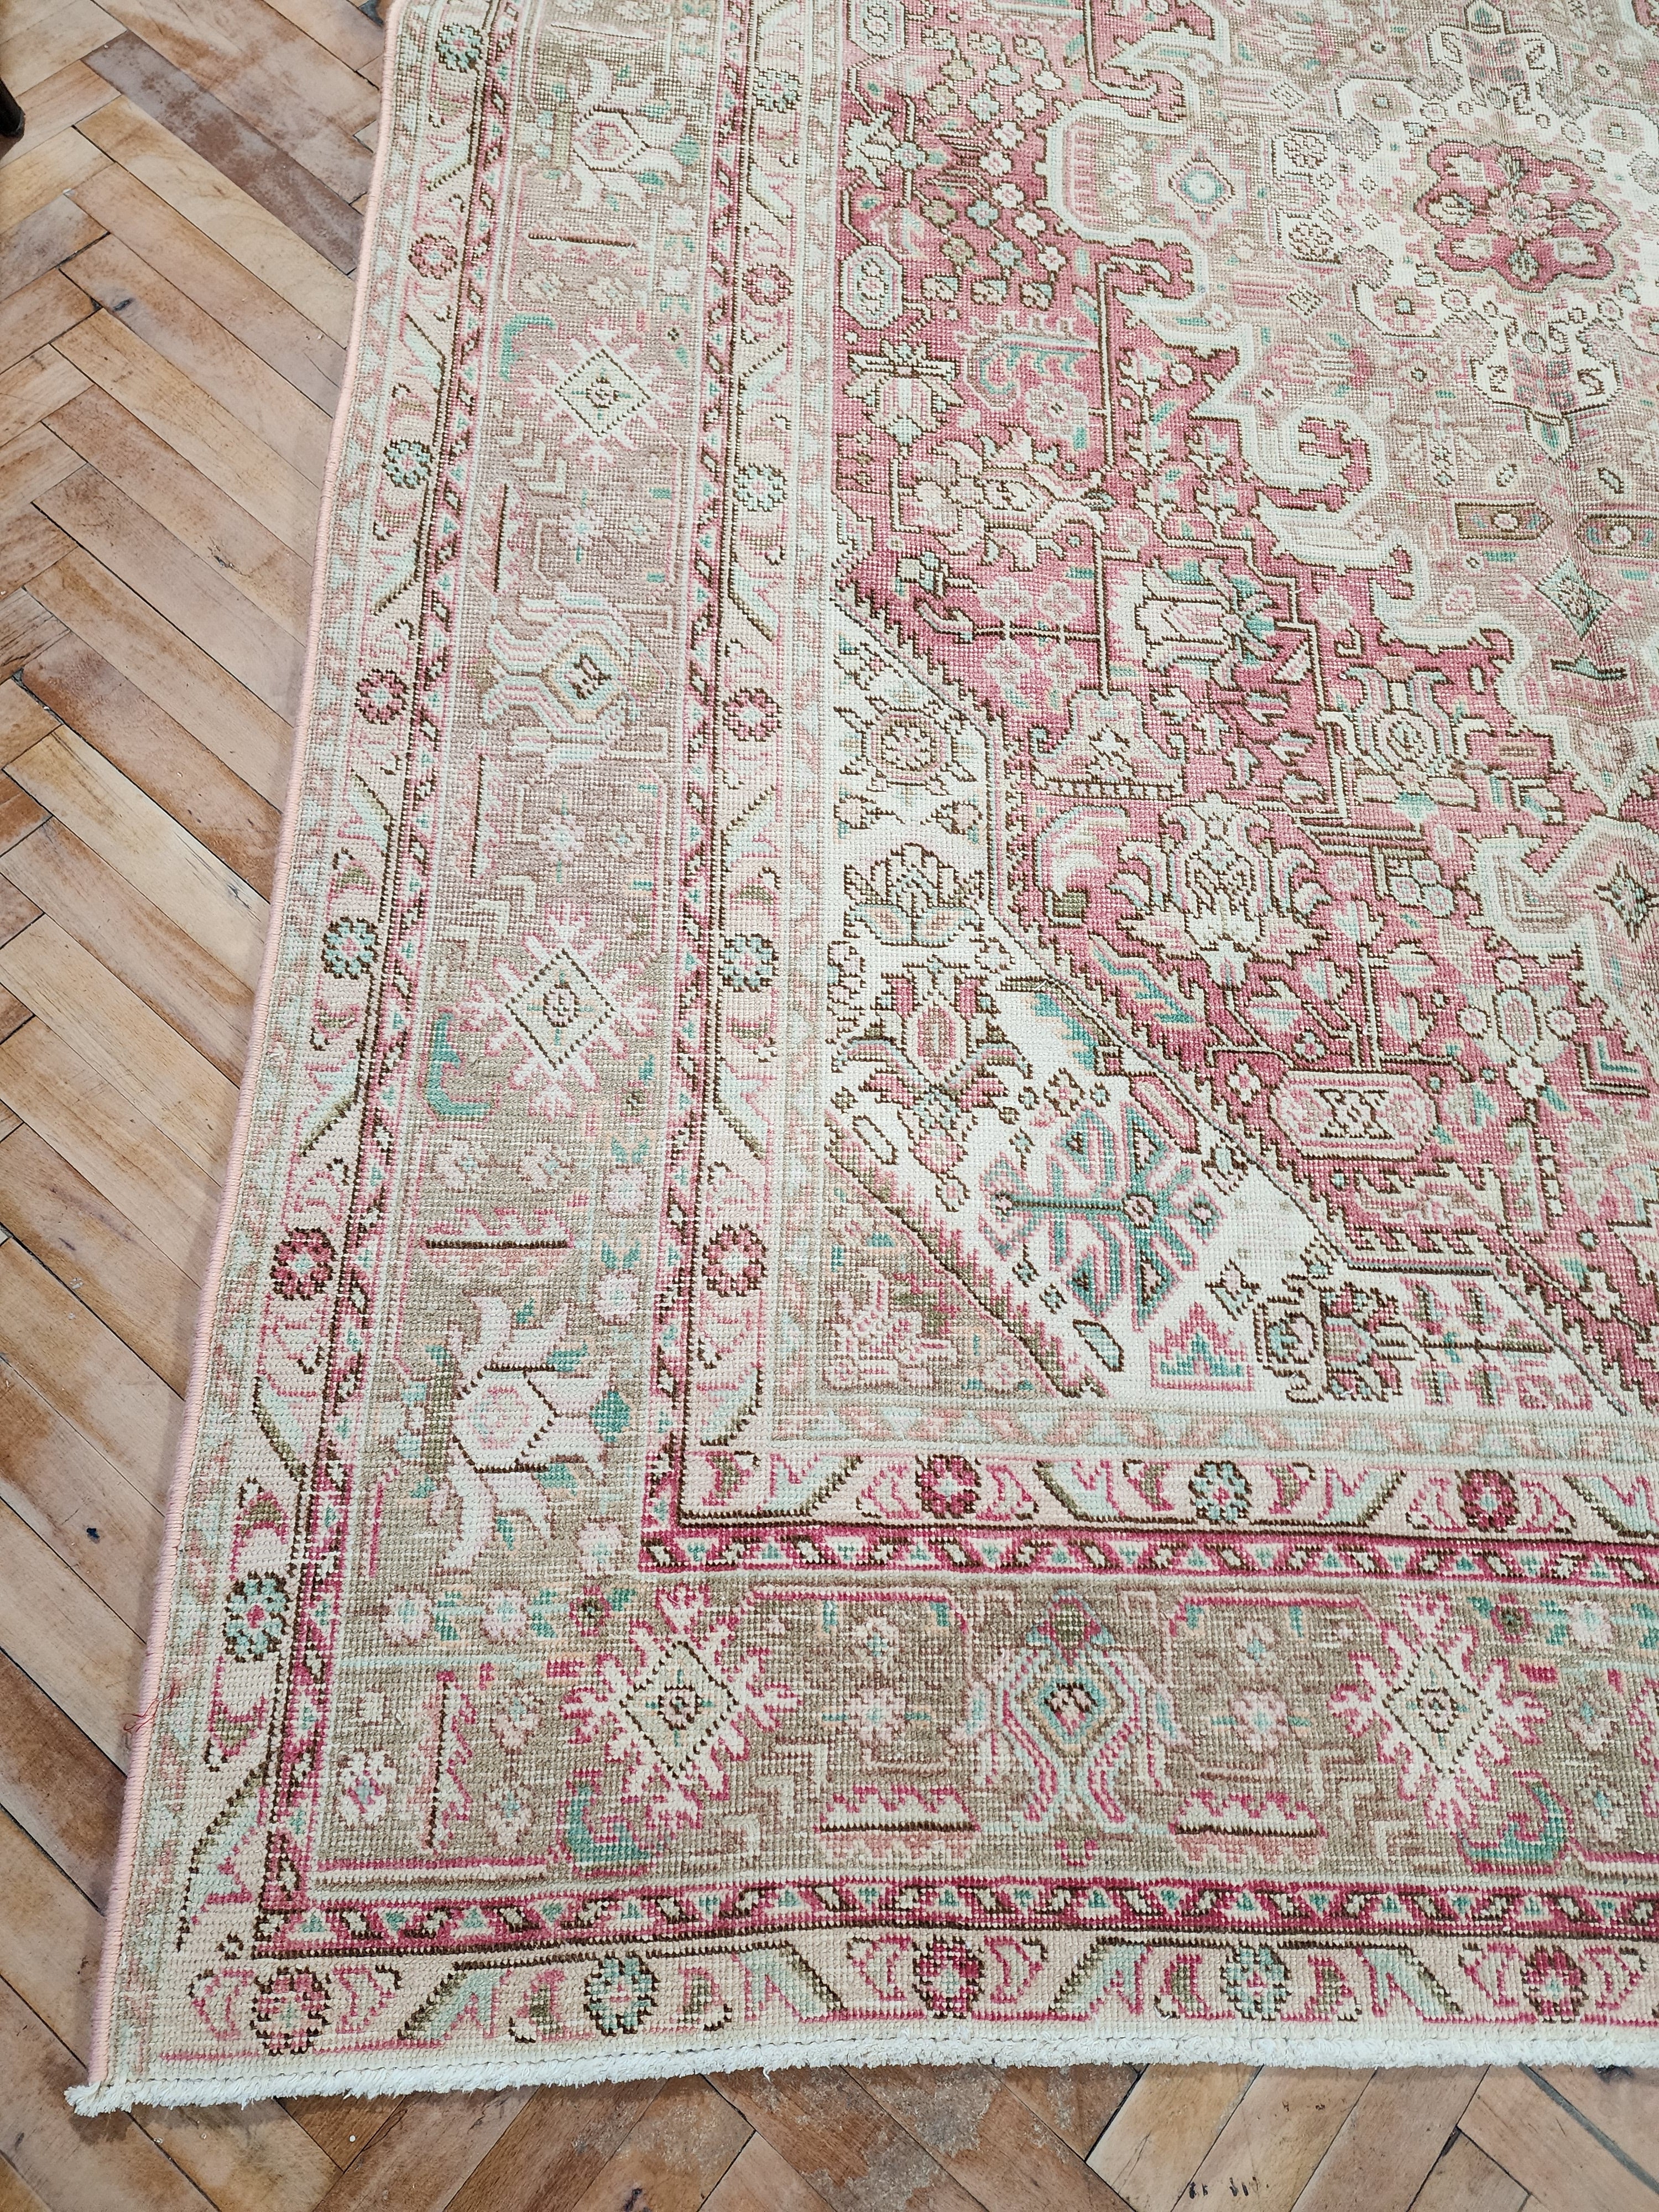 Vintage Persian Area Rug 9'5'' x ''6'' Vintage Turkish Tribal Natural Wool Rug, Recycled Oriental Design Rustic Bohemian Floor Rug, Carpet